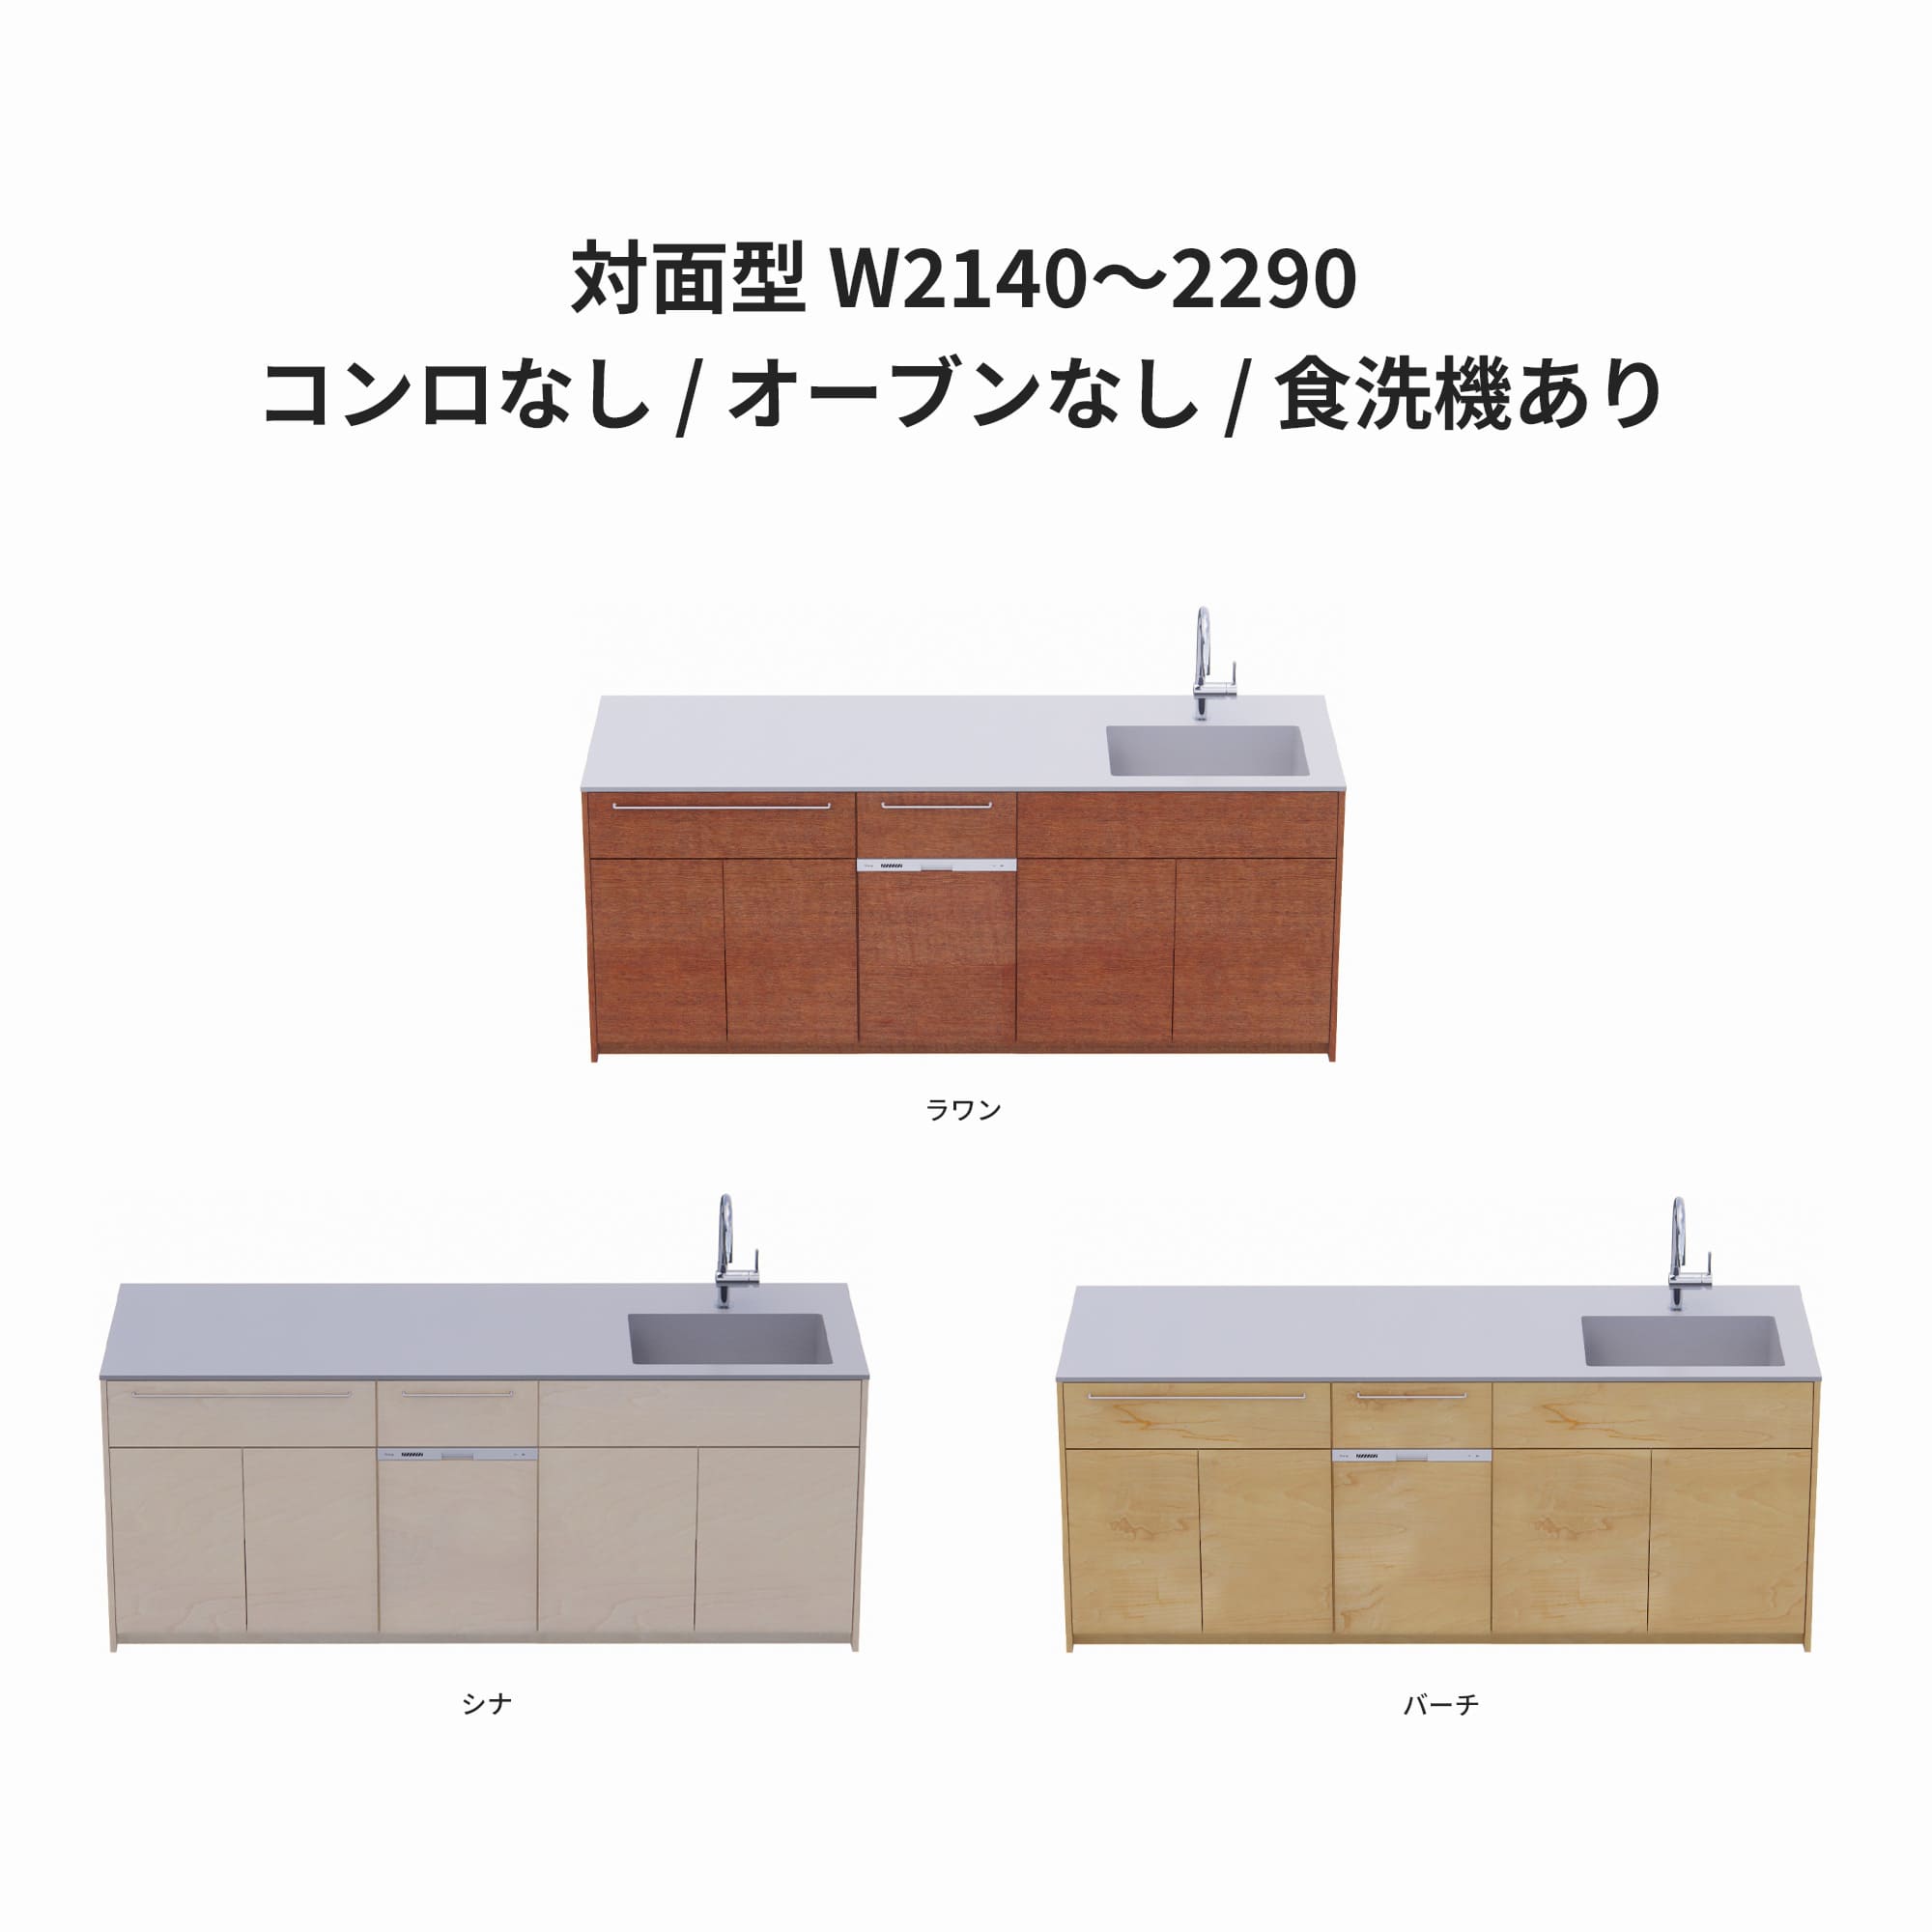 木製システムキッチン 対面型 W2140～2290・コンロなし / オーブンなし / 食洗機あり KB-KC022-39-G183 ラワン・シナ・バーチが選択できます